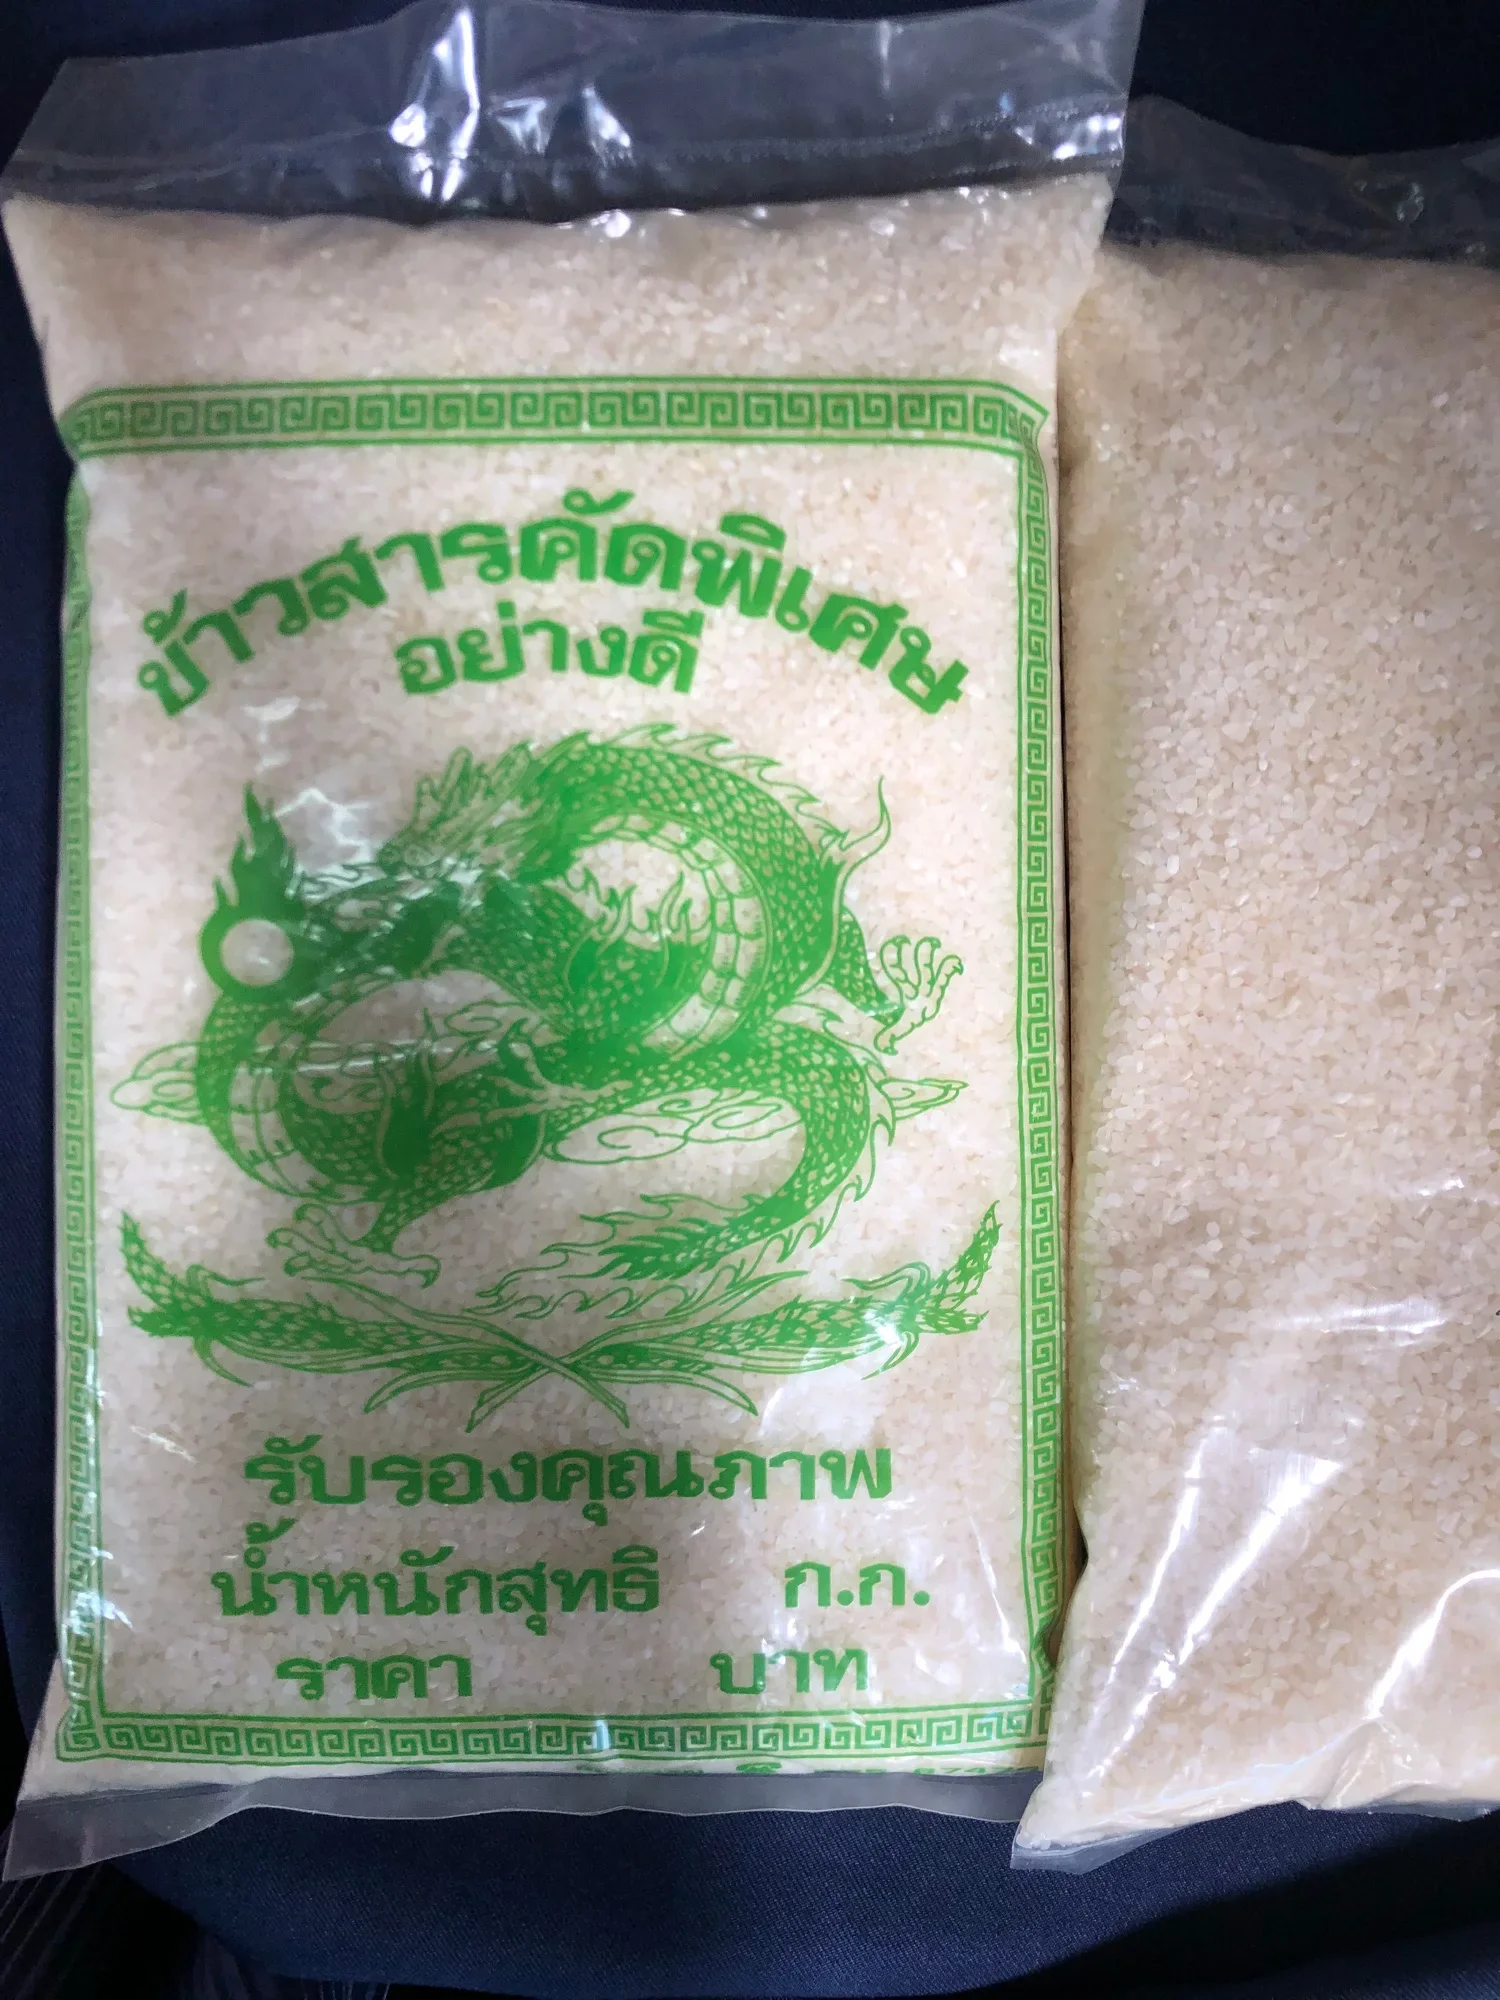 Beras Nasi Air Thailand 1kg/ Beras Bubur Cap Naga/ Beras Nasi Air Siam Cap Naga/ Beras hancur